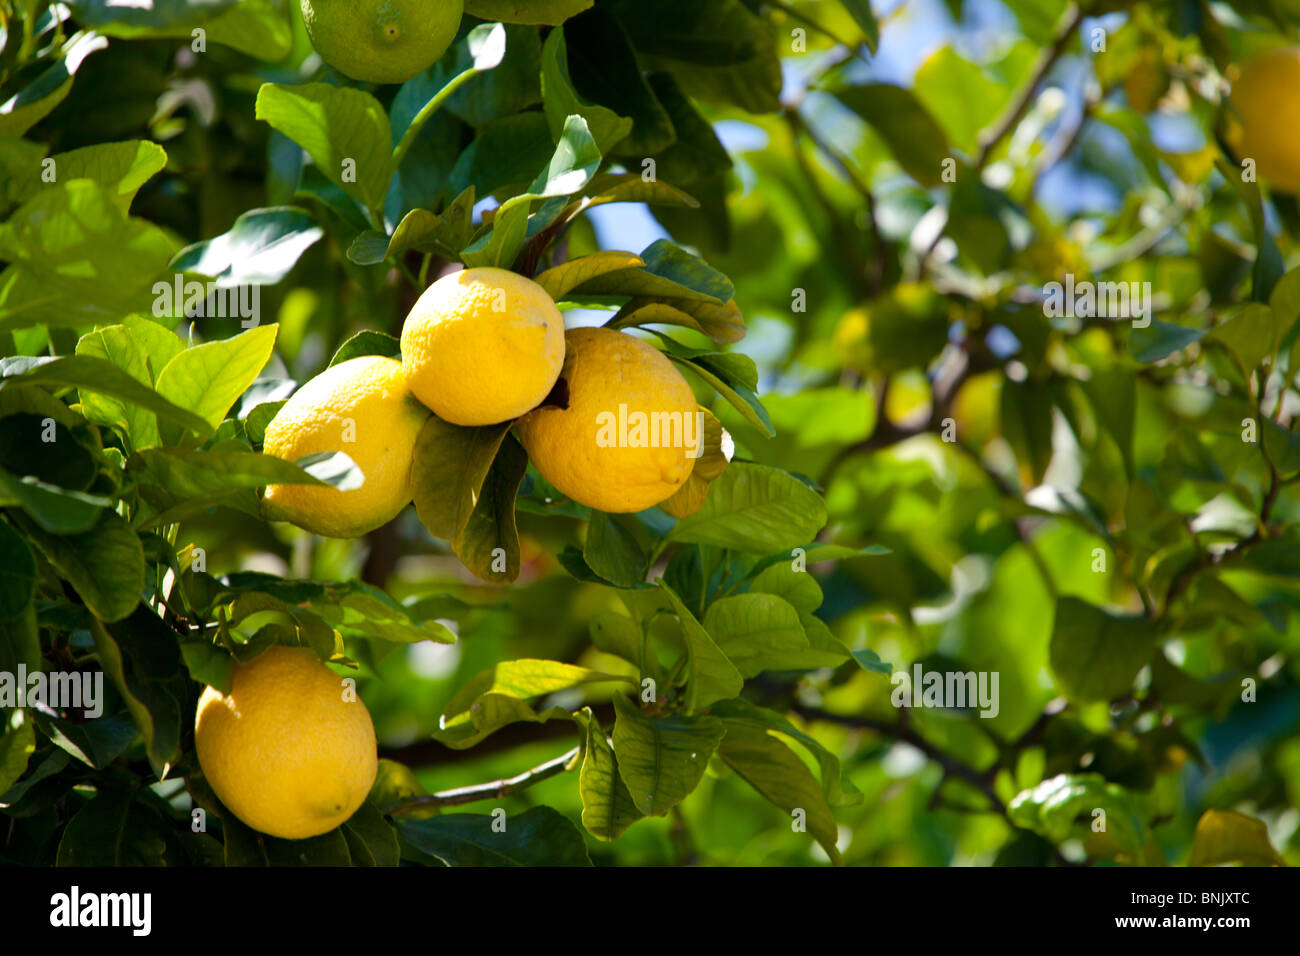 Molto maturo limoni crescono su un albero di limone. Il piccolo gruppo di limoni sono mostrati da vicino e a tra le foglie degli alberi a Cannes, Francia Foto Stock